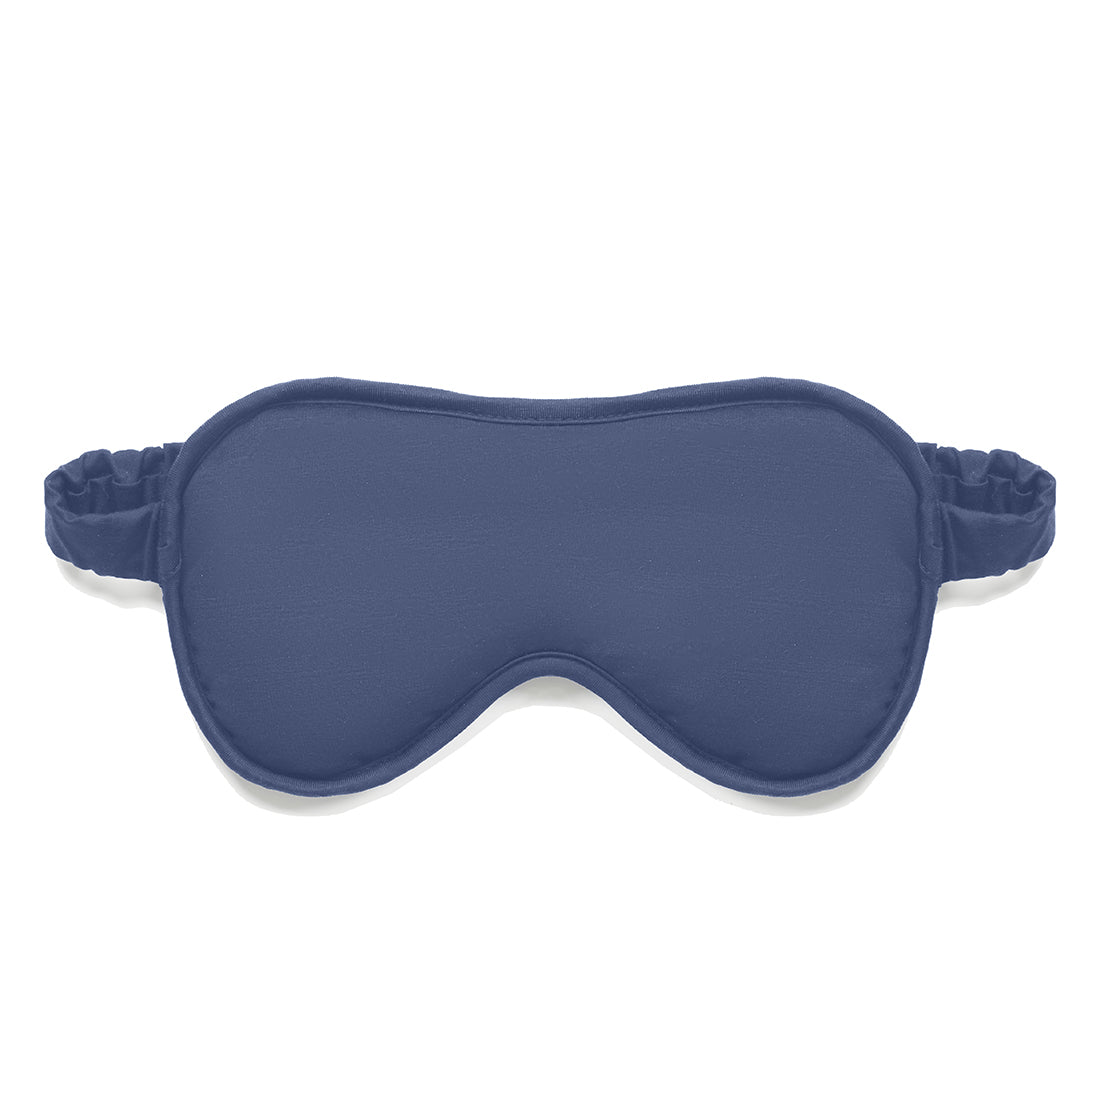 Cooling sleep mask || Coastal blue